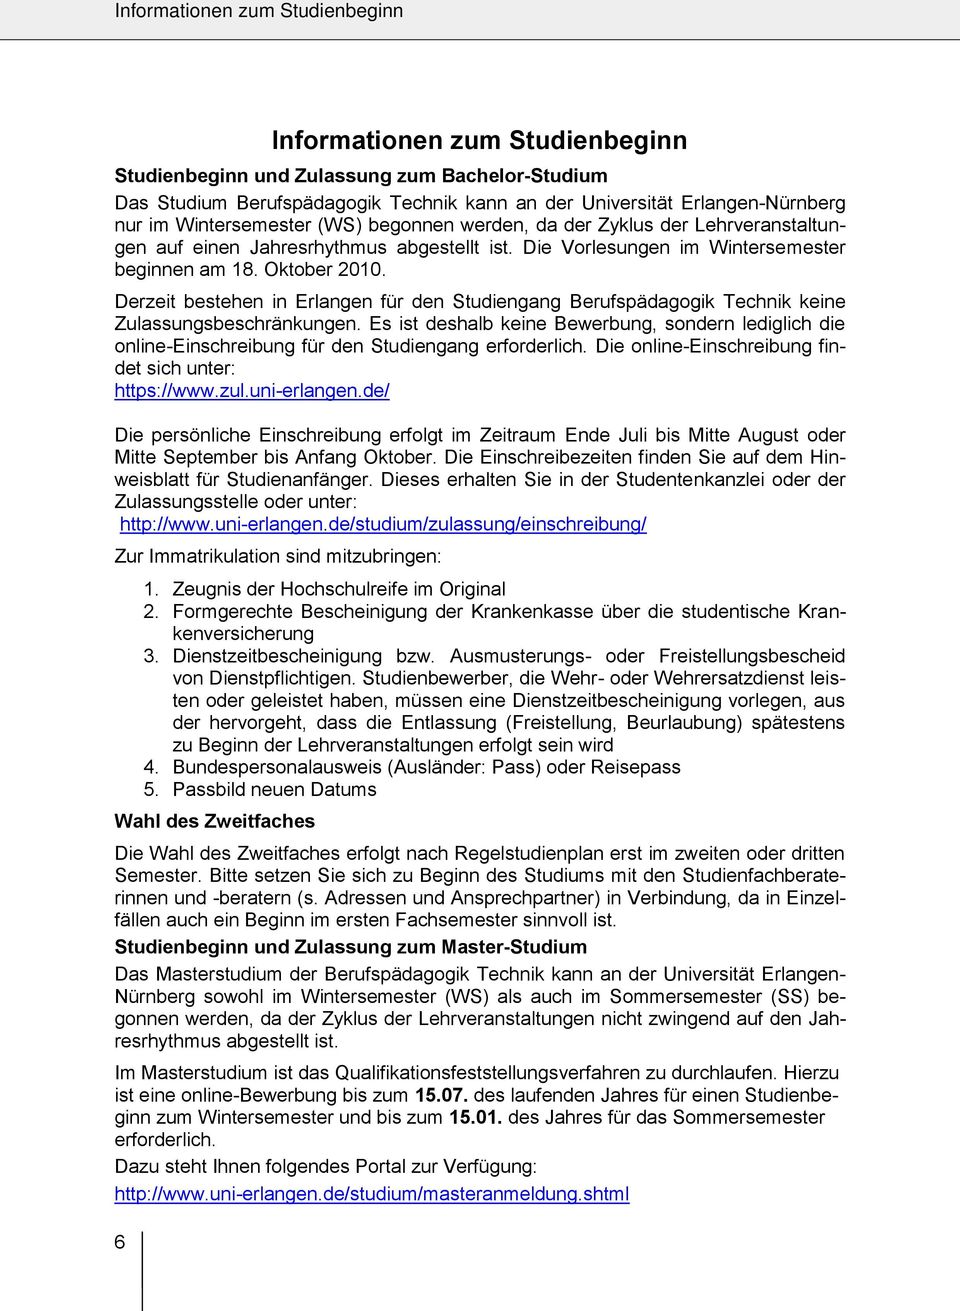 Derzeit bestehen in Erlangen für den Studiengang Berufspädagogik Technik keine Zulassungsbeschränkungen.